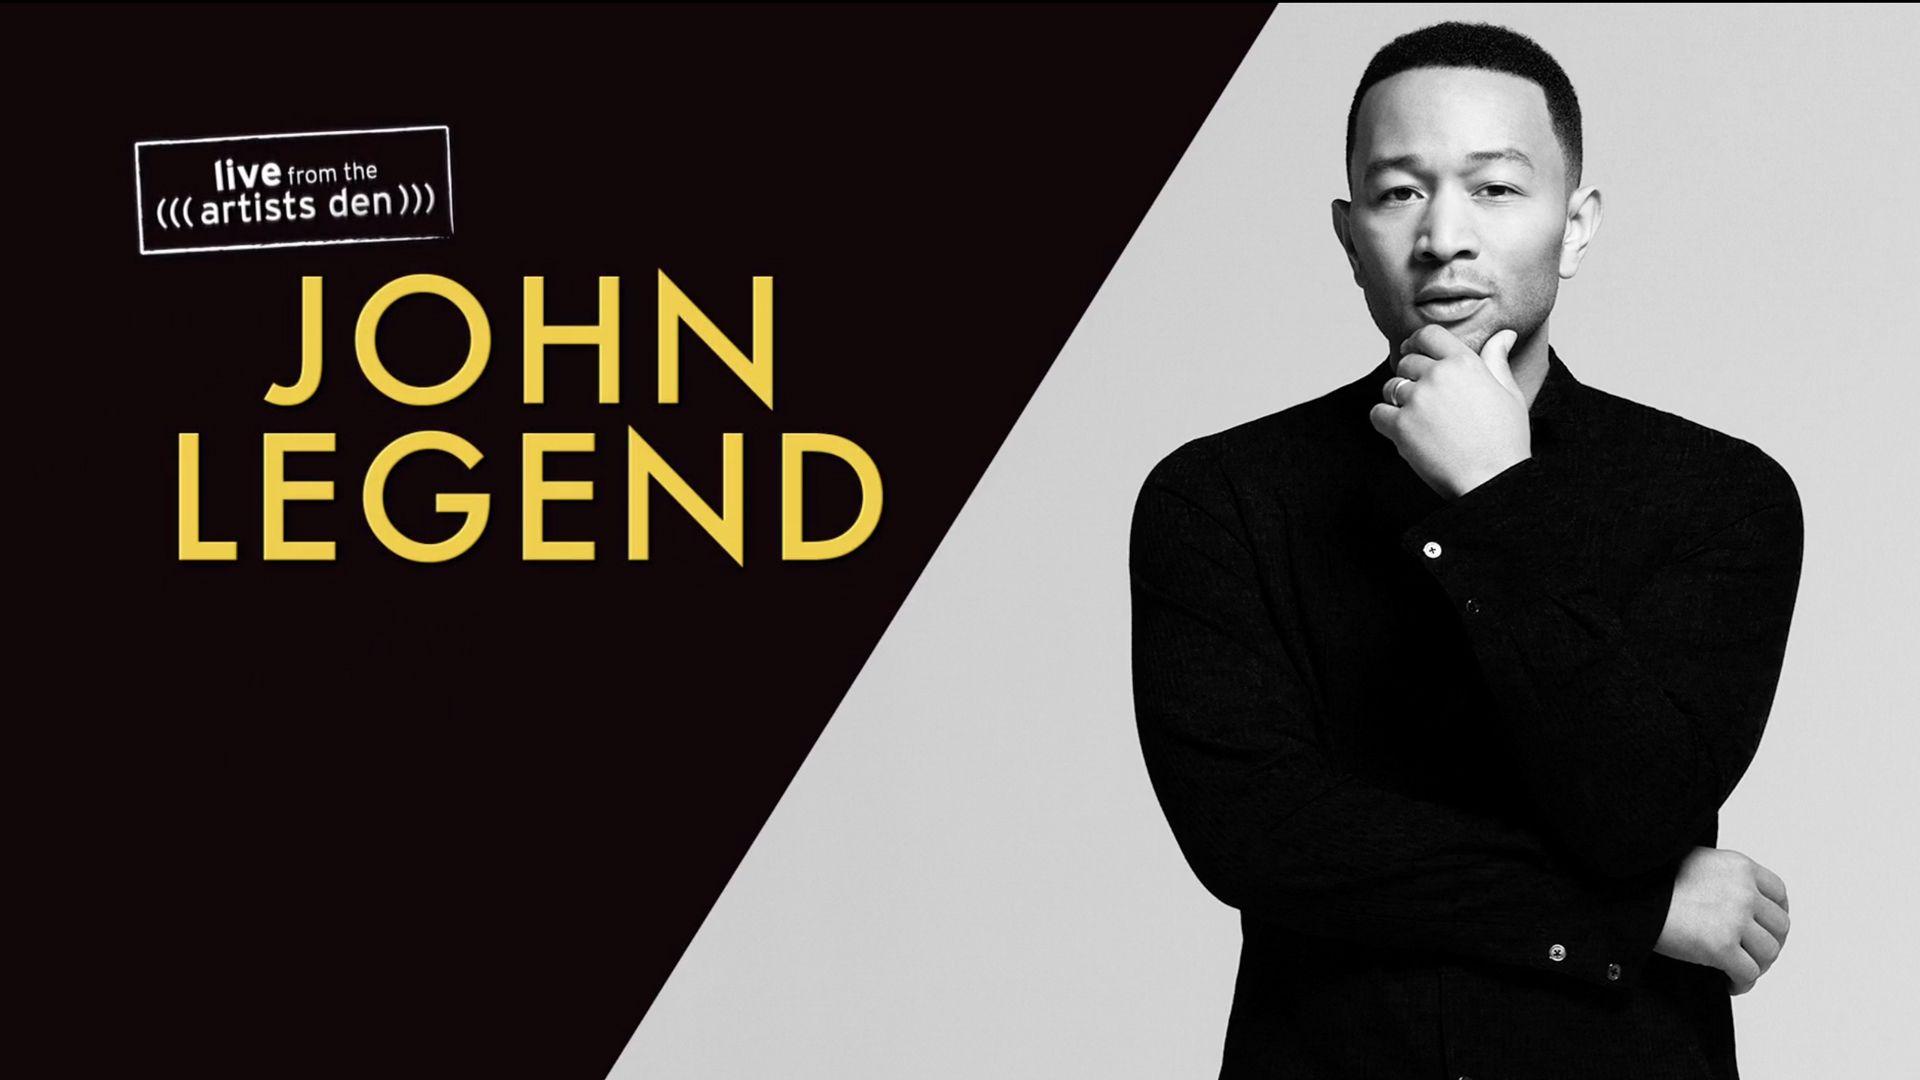 John Legend: Live from the Artists Den